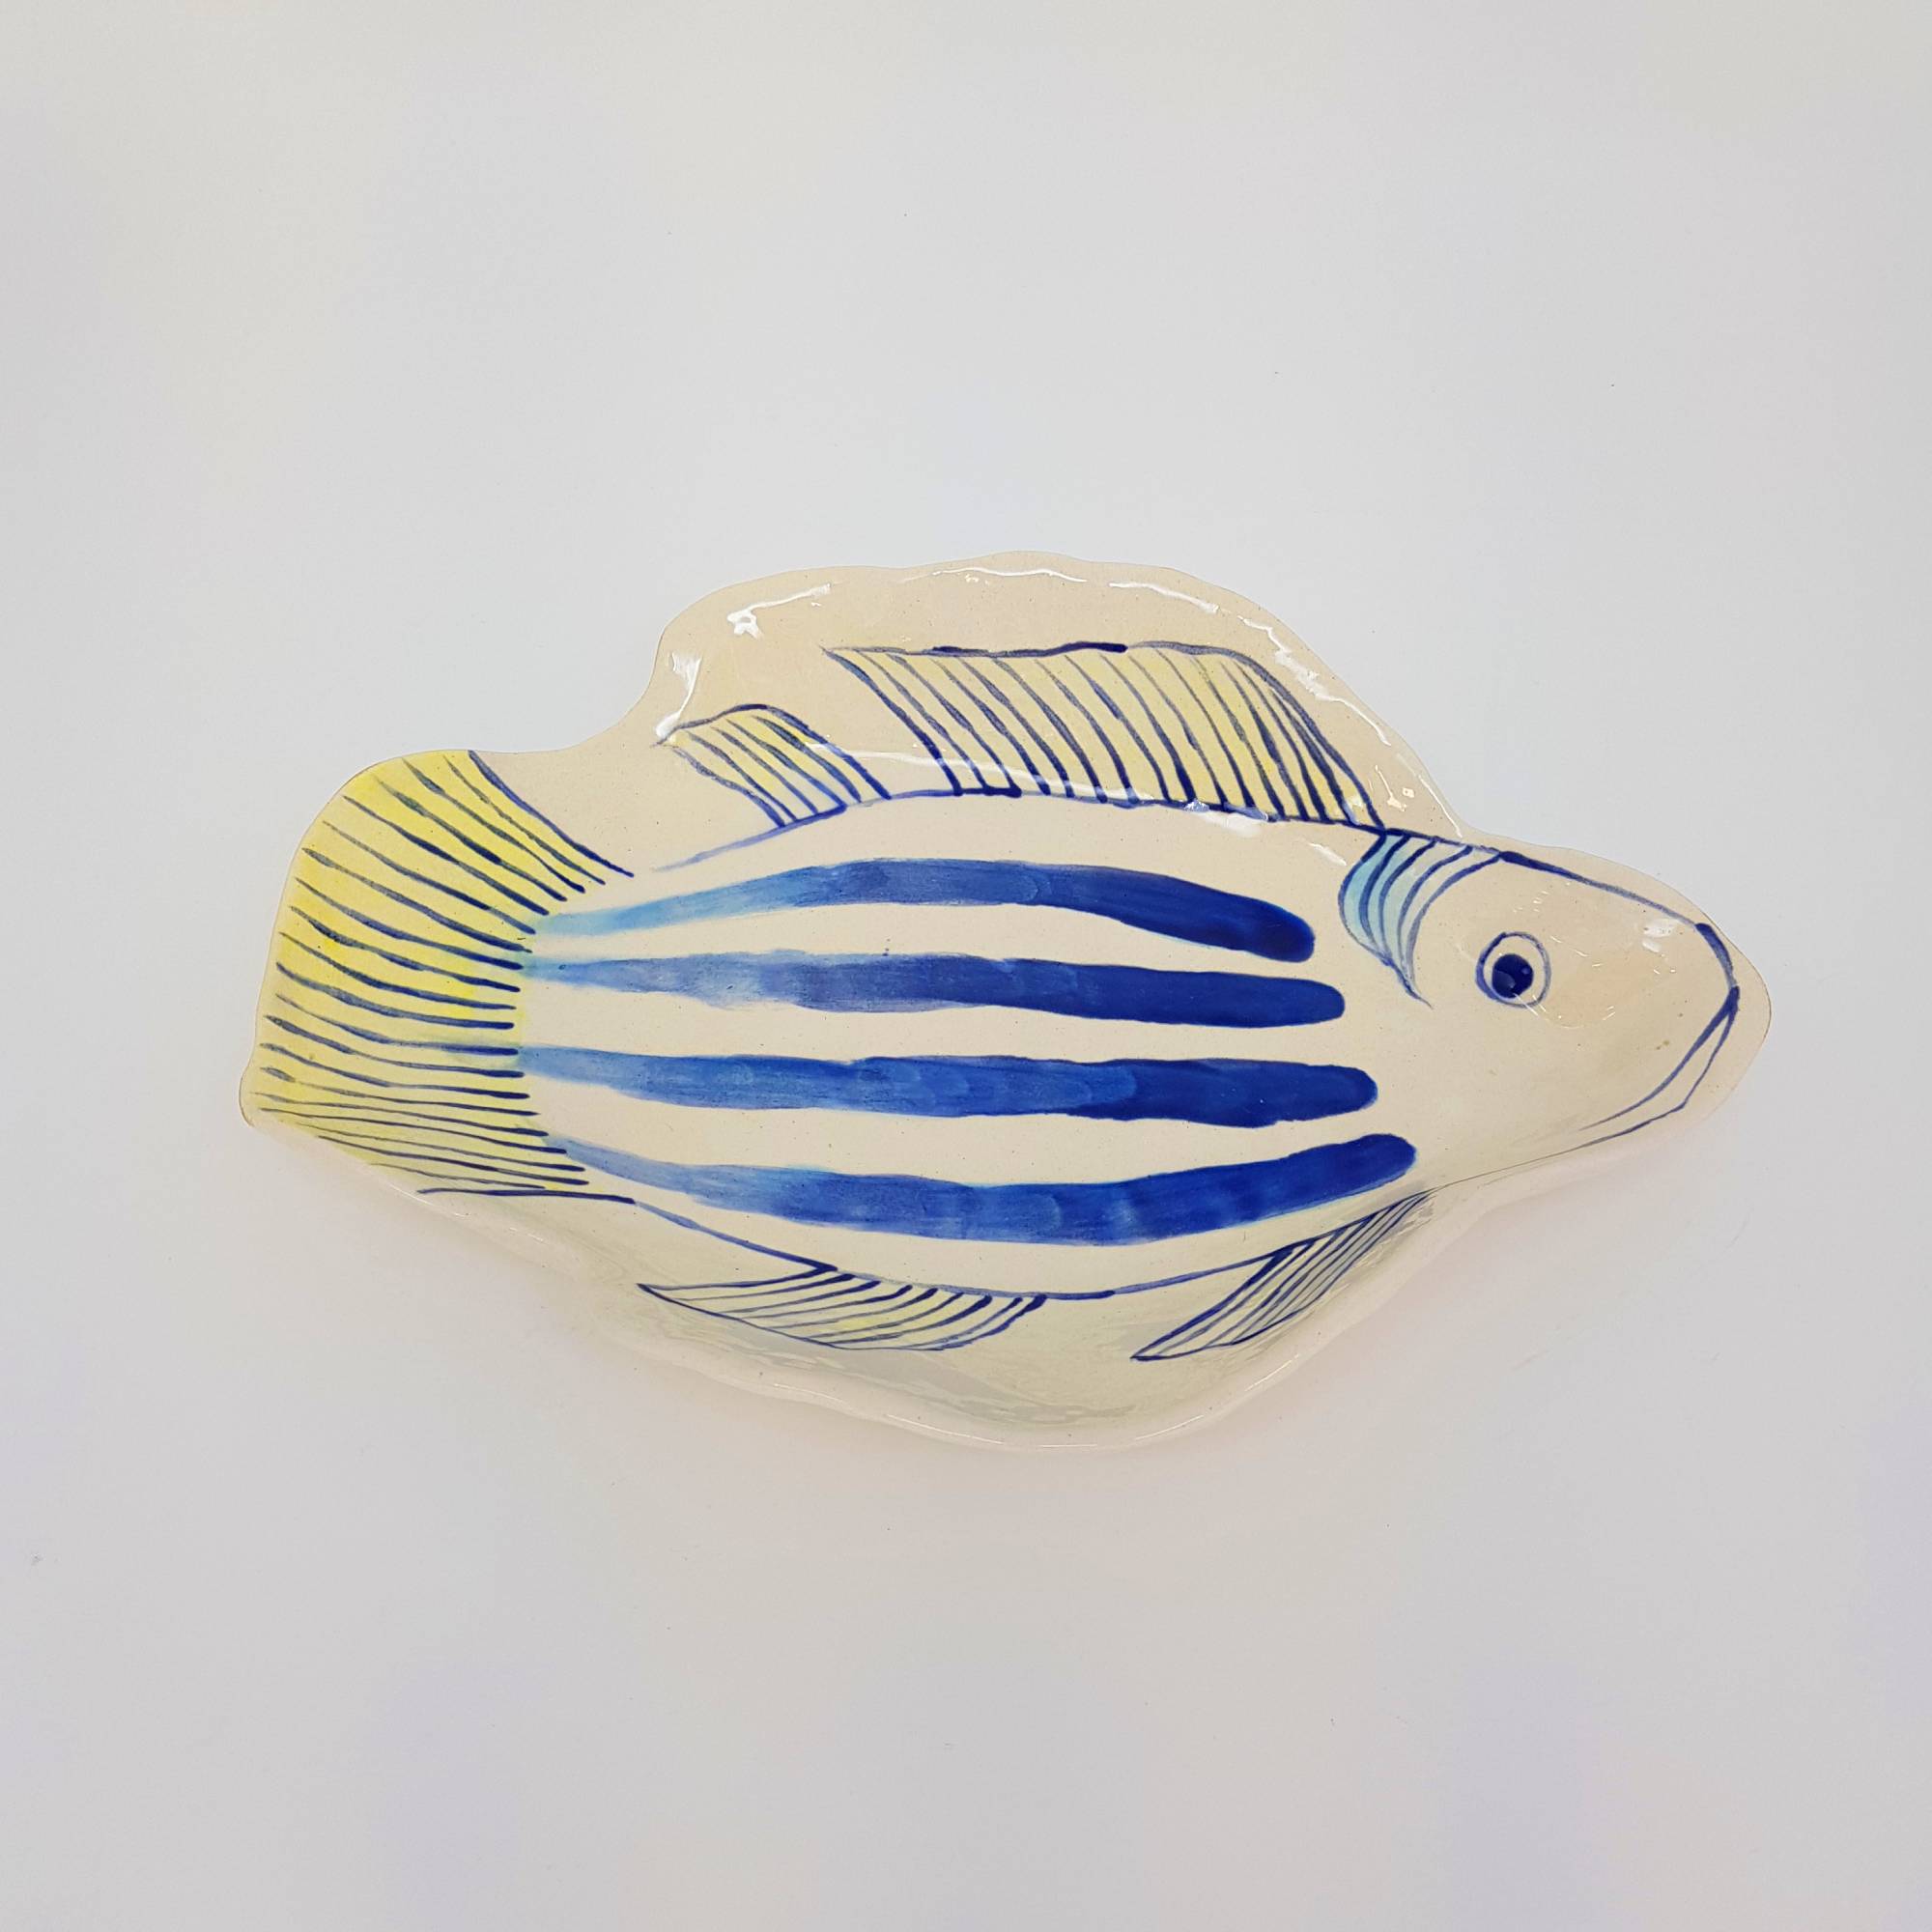 Petisqueira formato de peixe - azul e amarelo